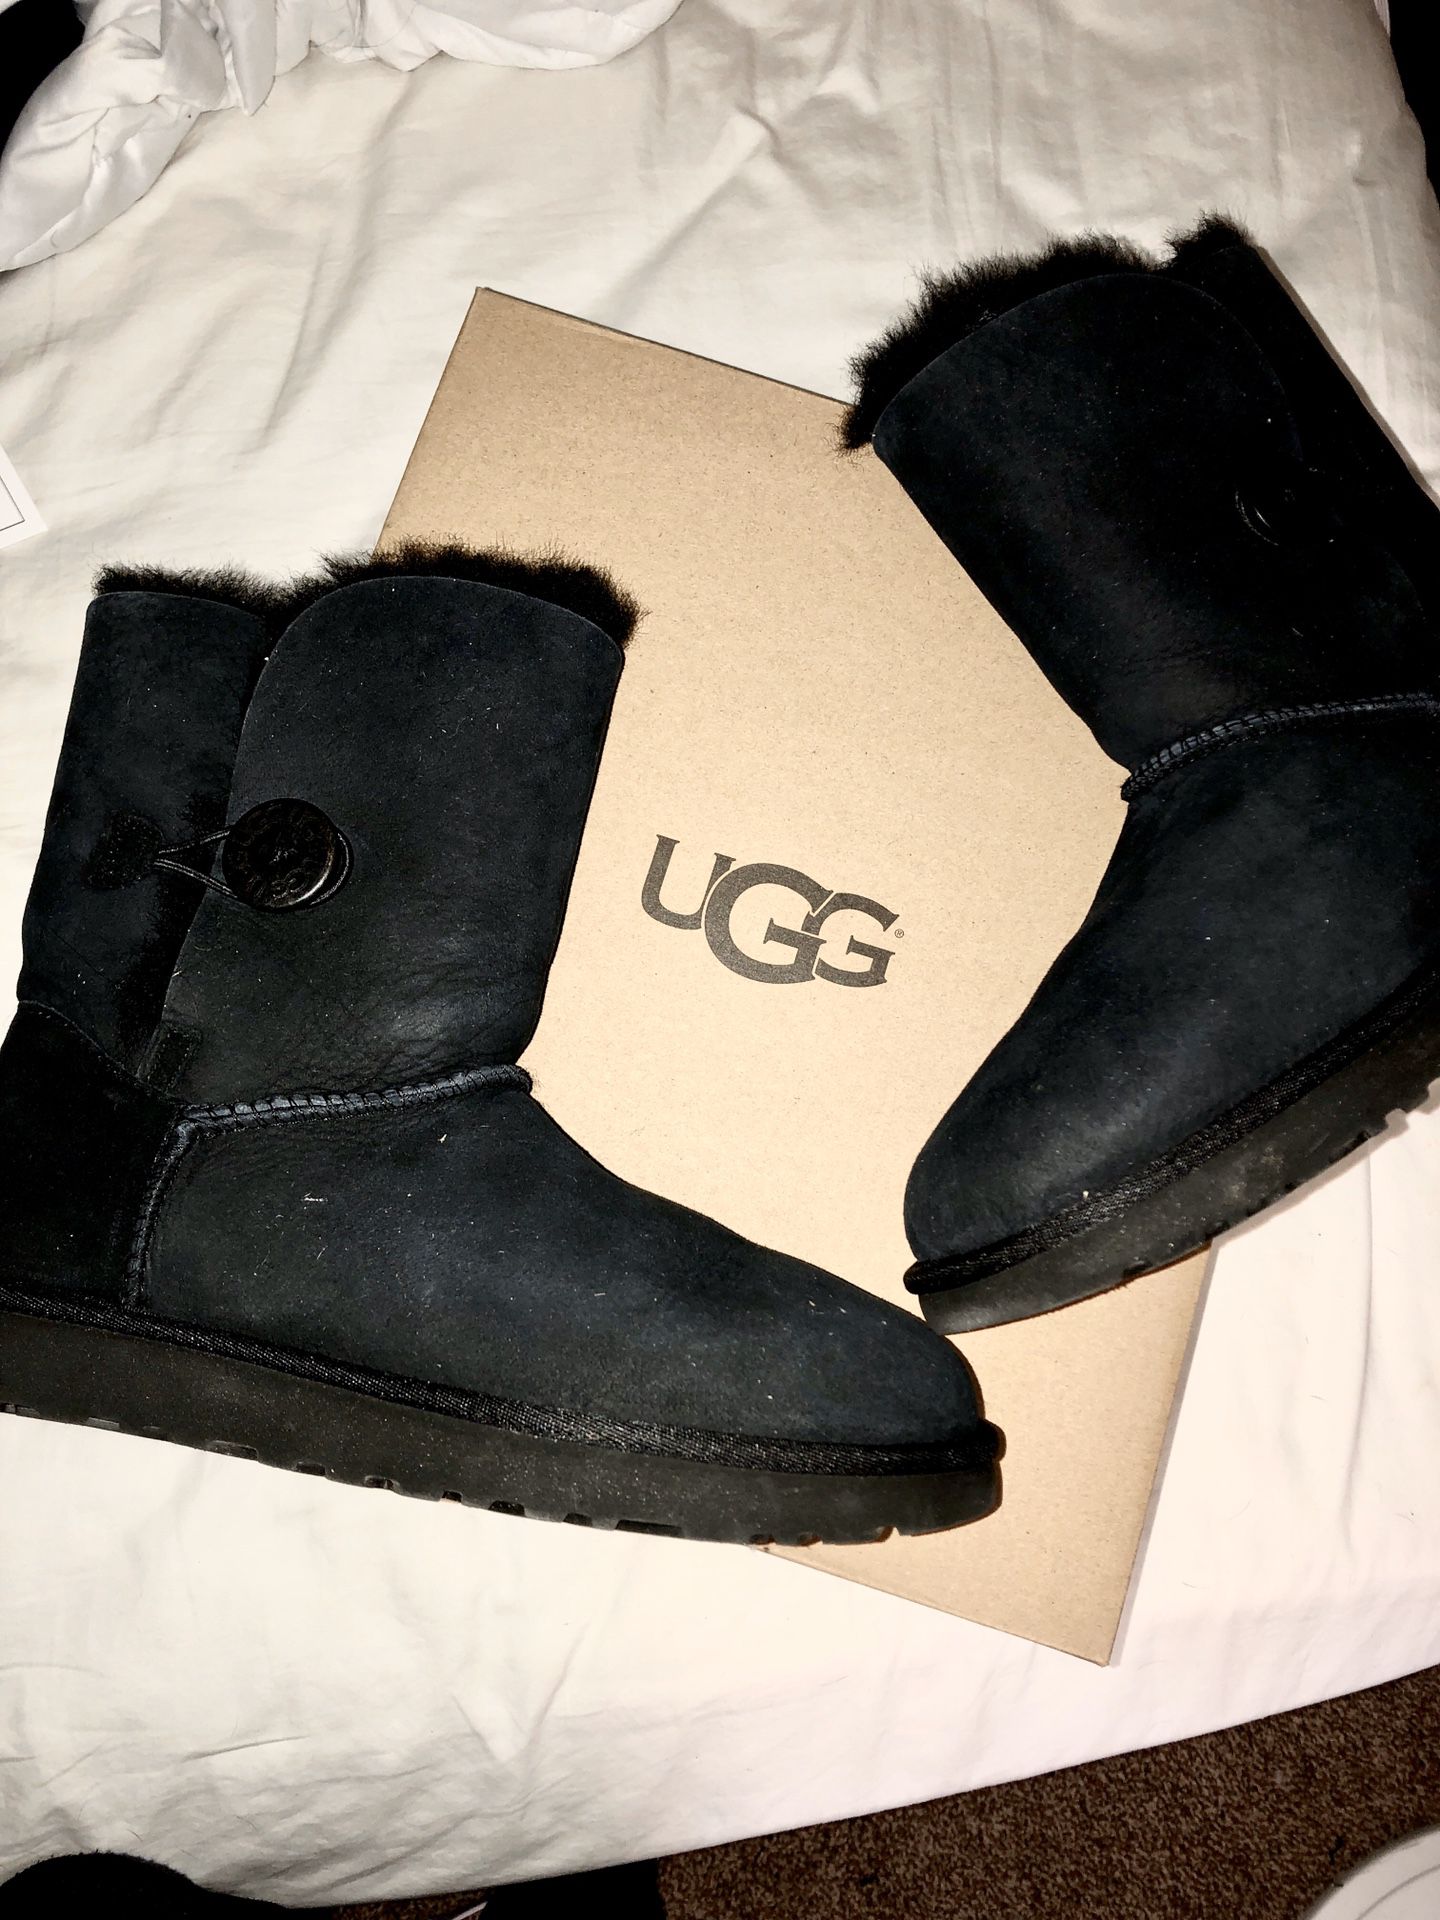 UGG women’s winter boots